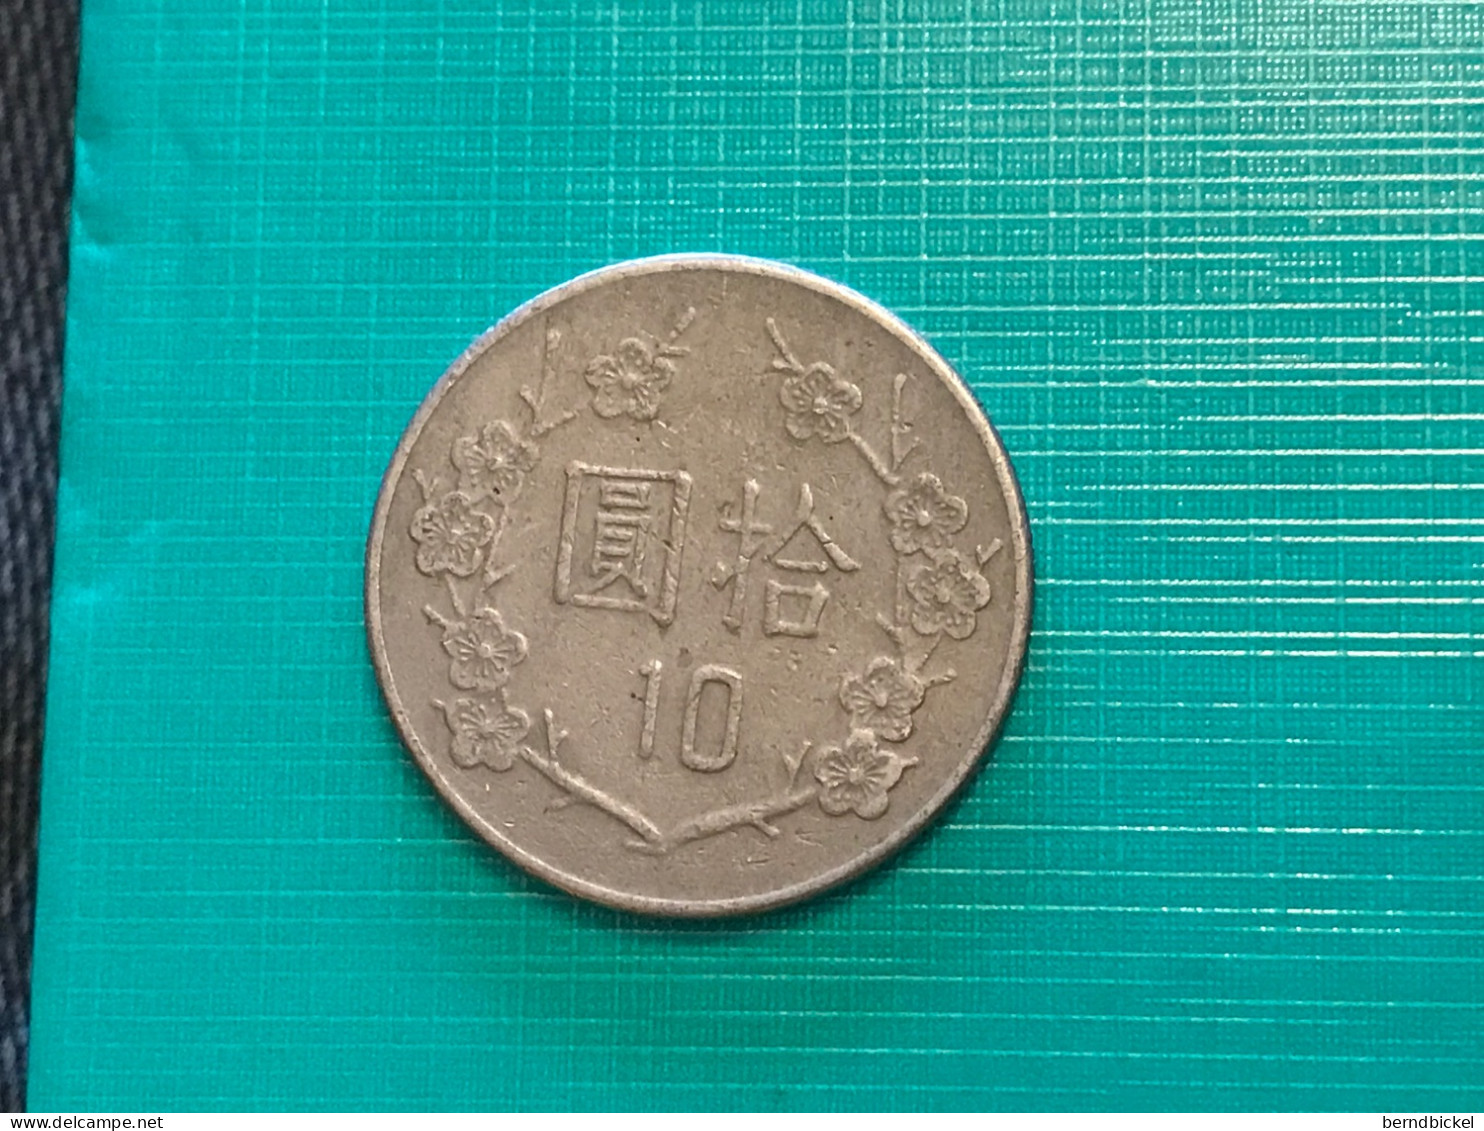 Münze Münzen Umlaufmünze Taiwan 10 Dollar 1982 - Taiwan